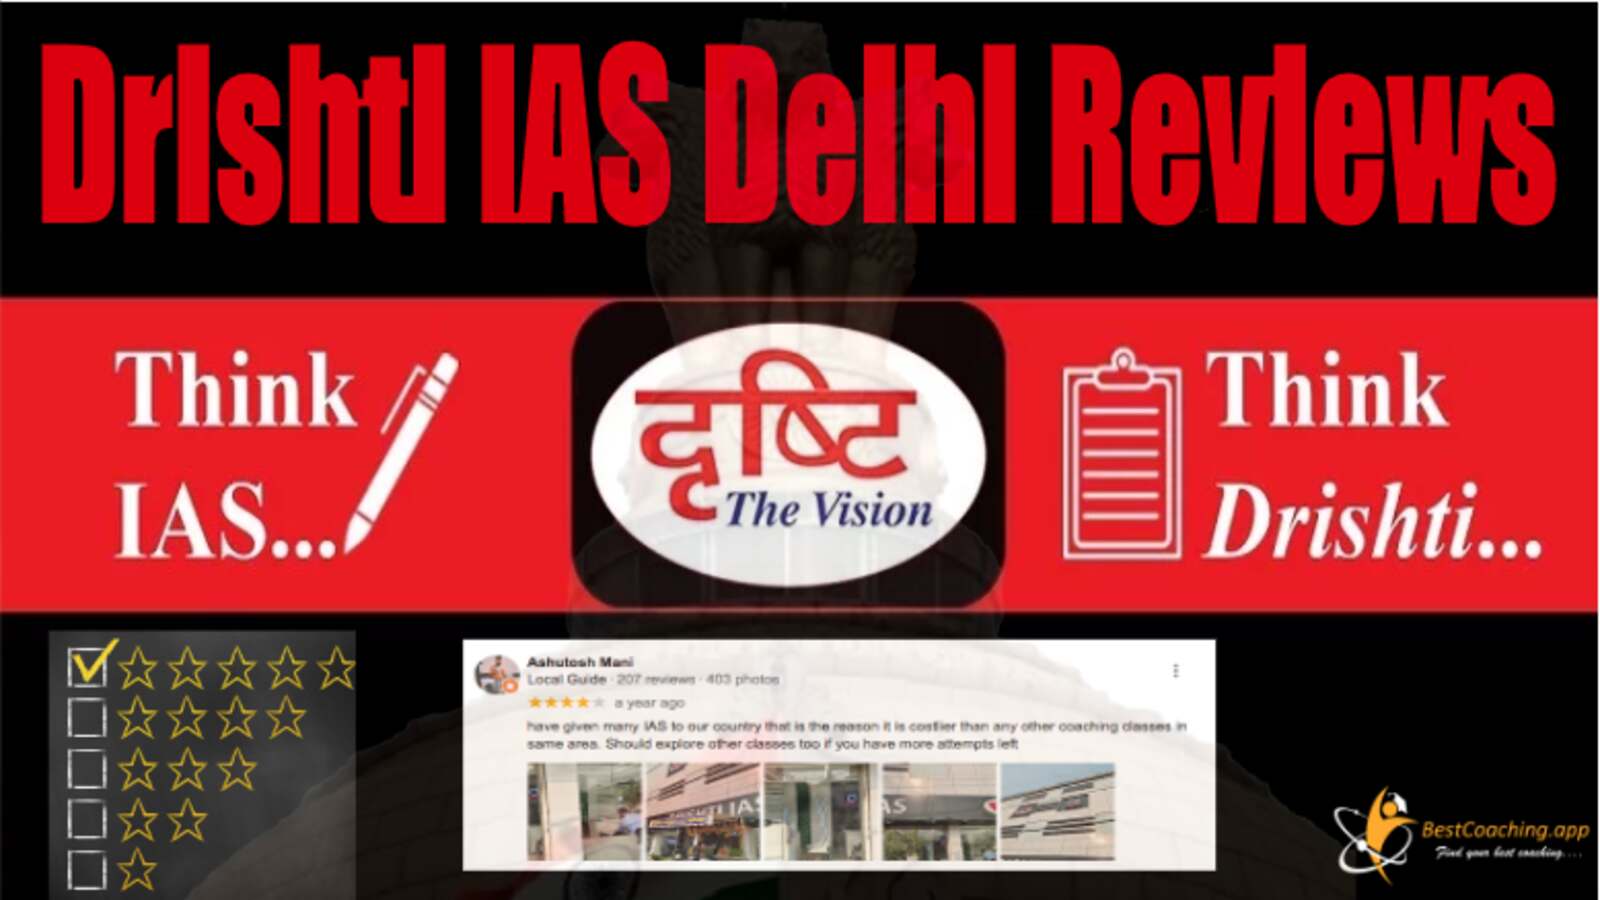 Drishti IAS Delhi Reviews